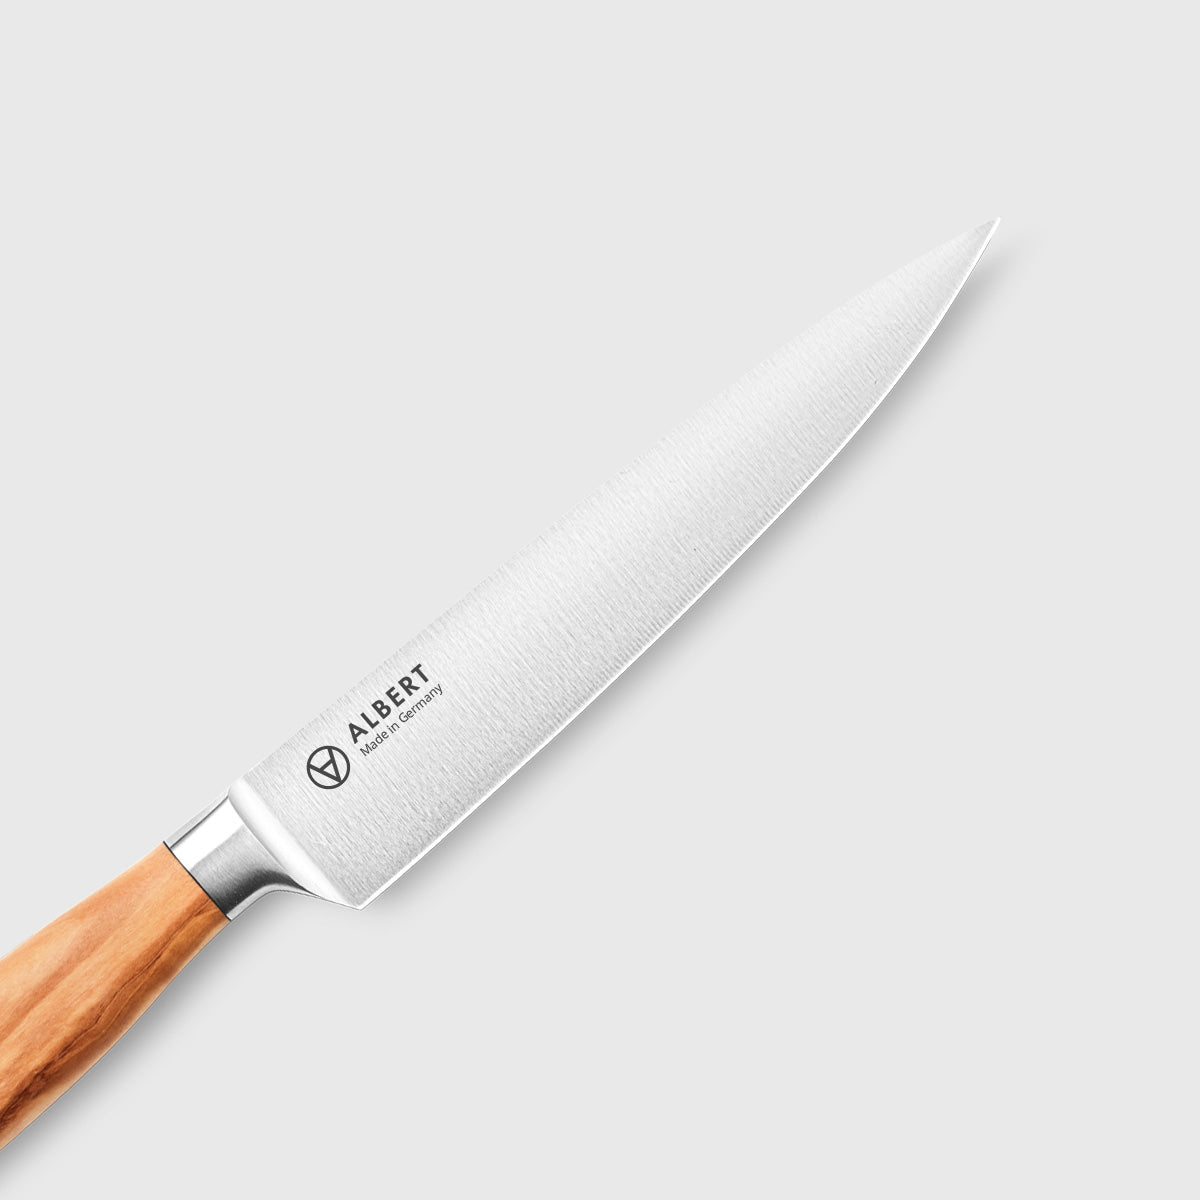 Walnut Tradition® 6 Utility Knife